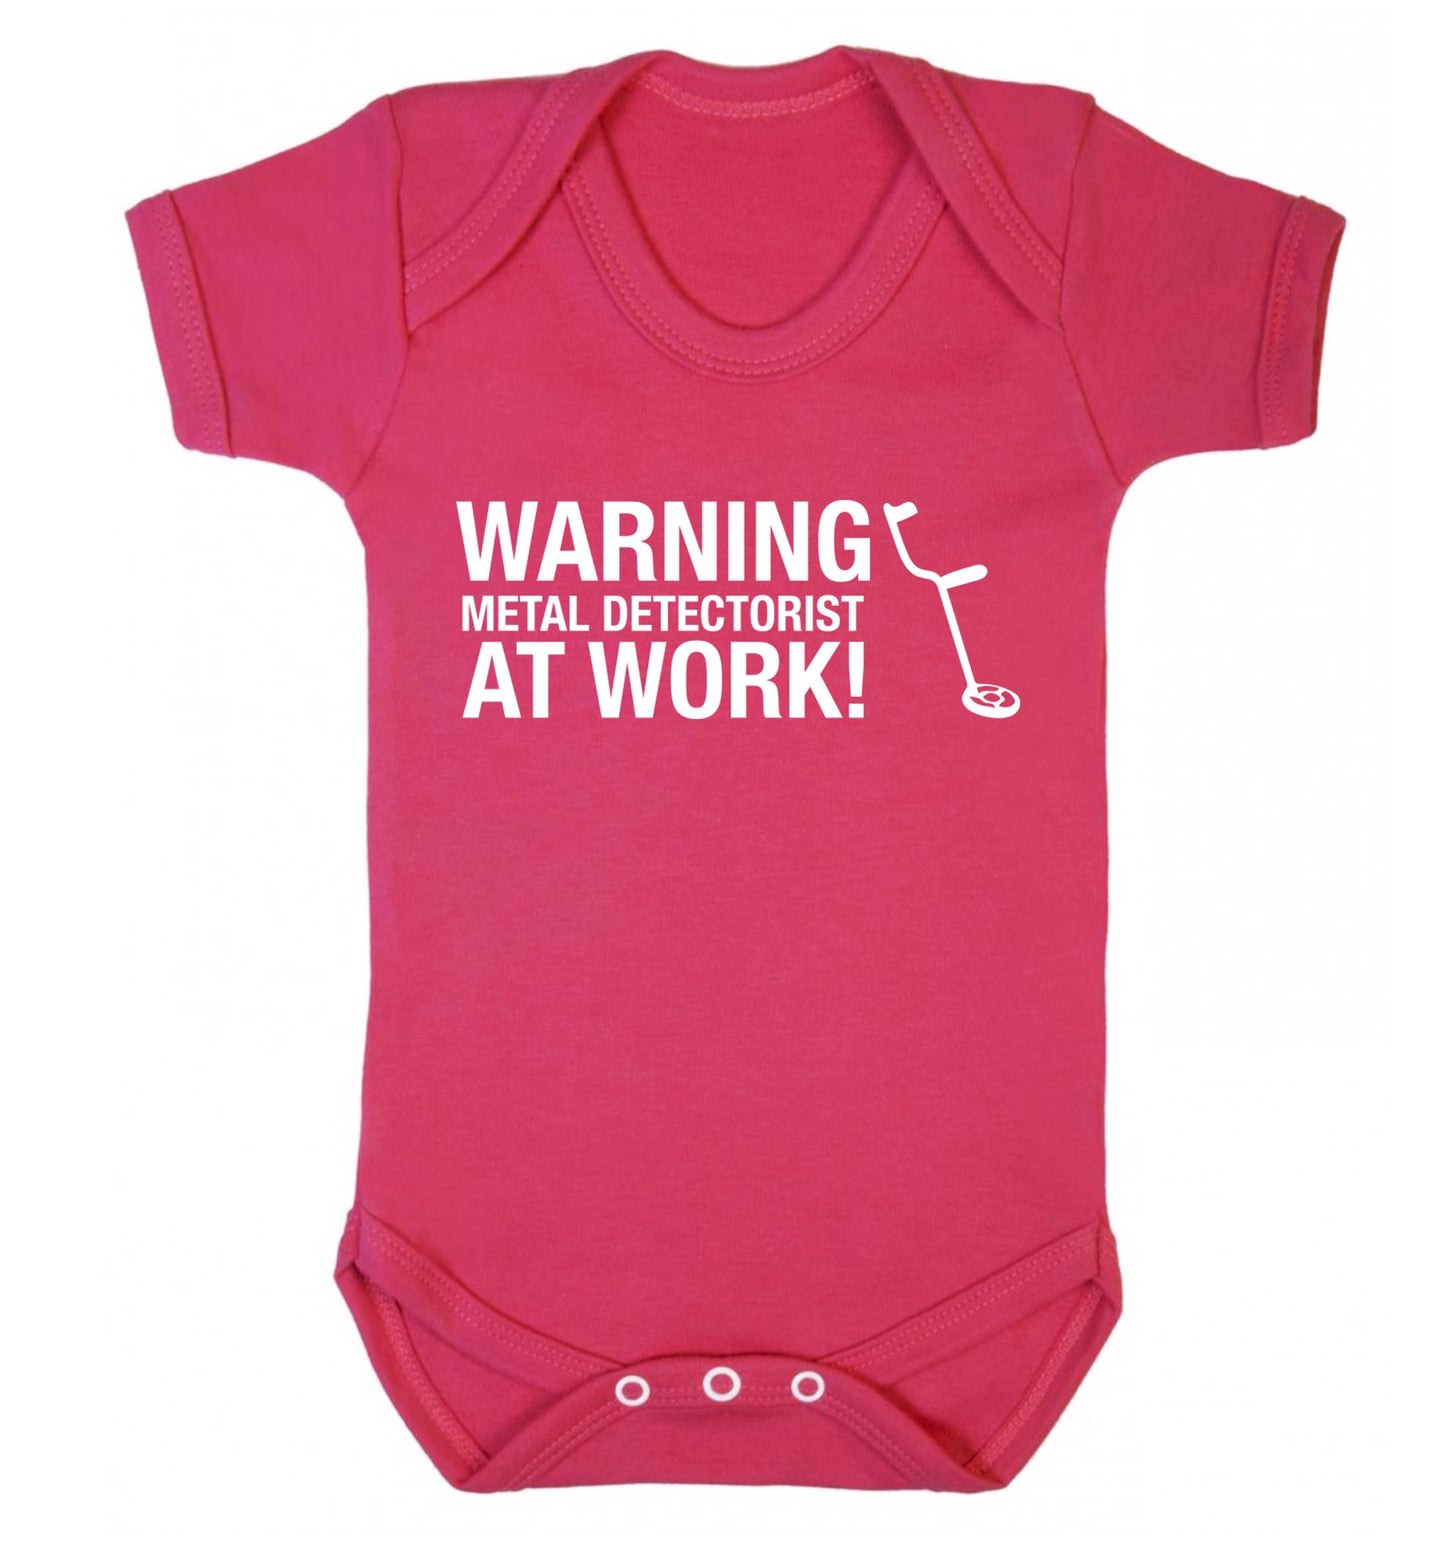 Warning metal detectorist at work! Baby Vest dark pink 18-24 months